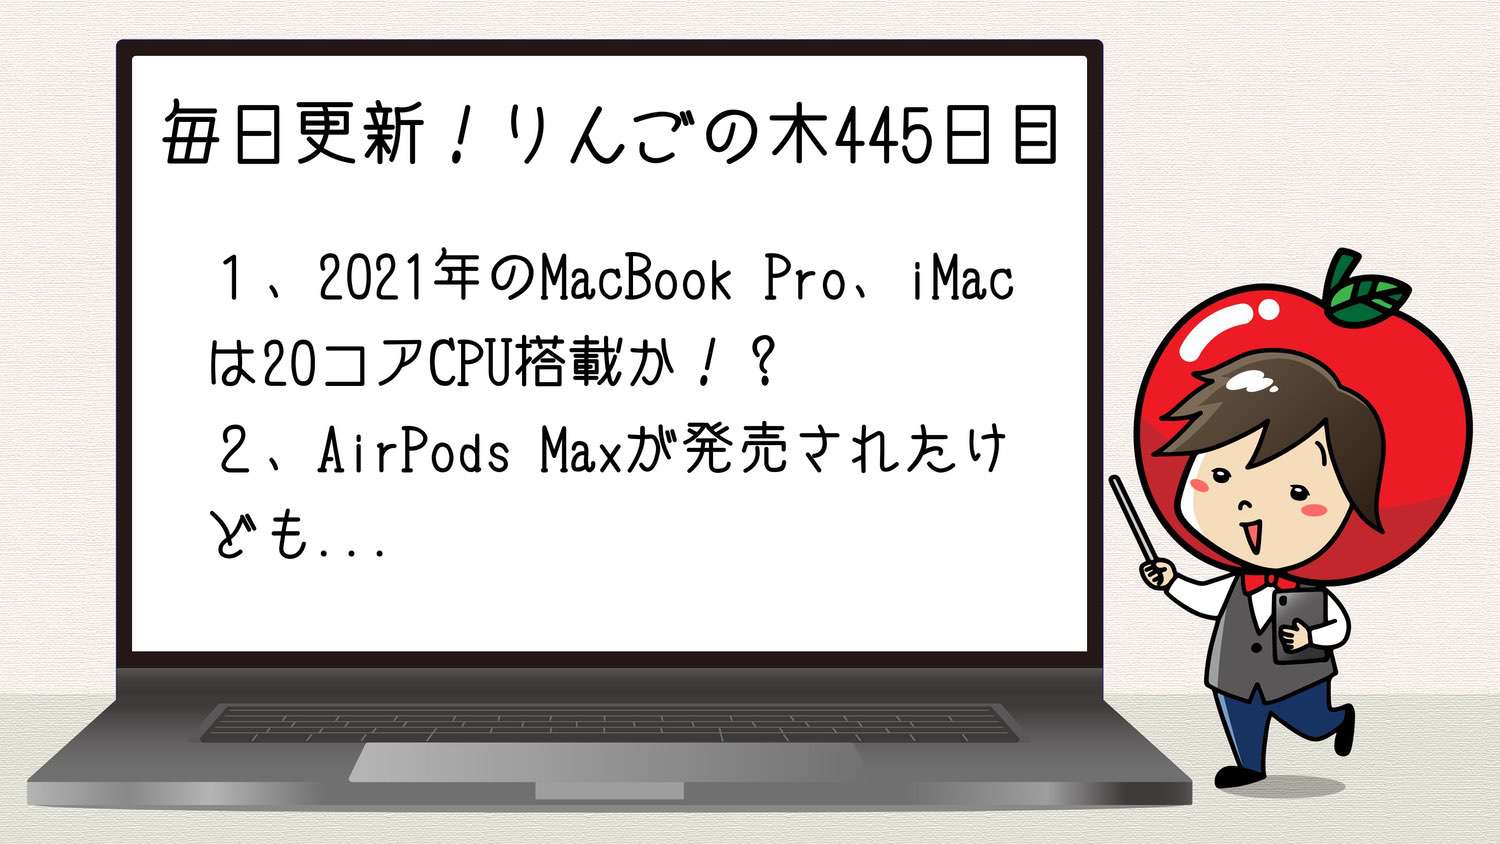 20コアCPU、32コアGPU搭載のMacBook Pro、iMacを2021年に発売か！？【毎日更新りんごの木(445日目)】